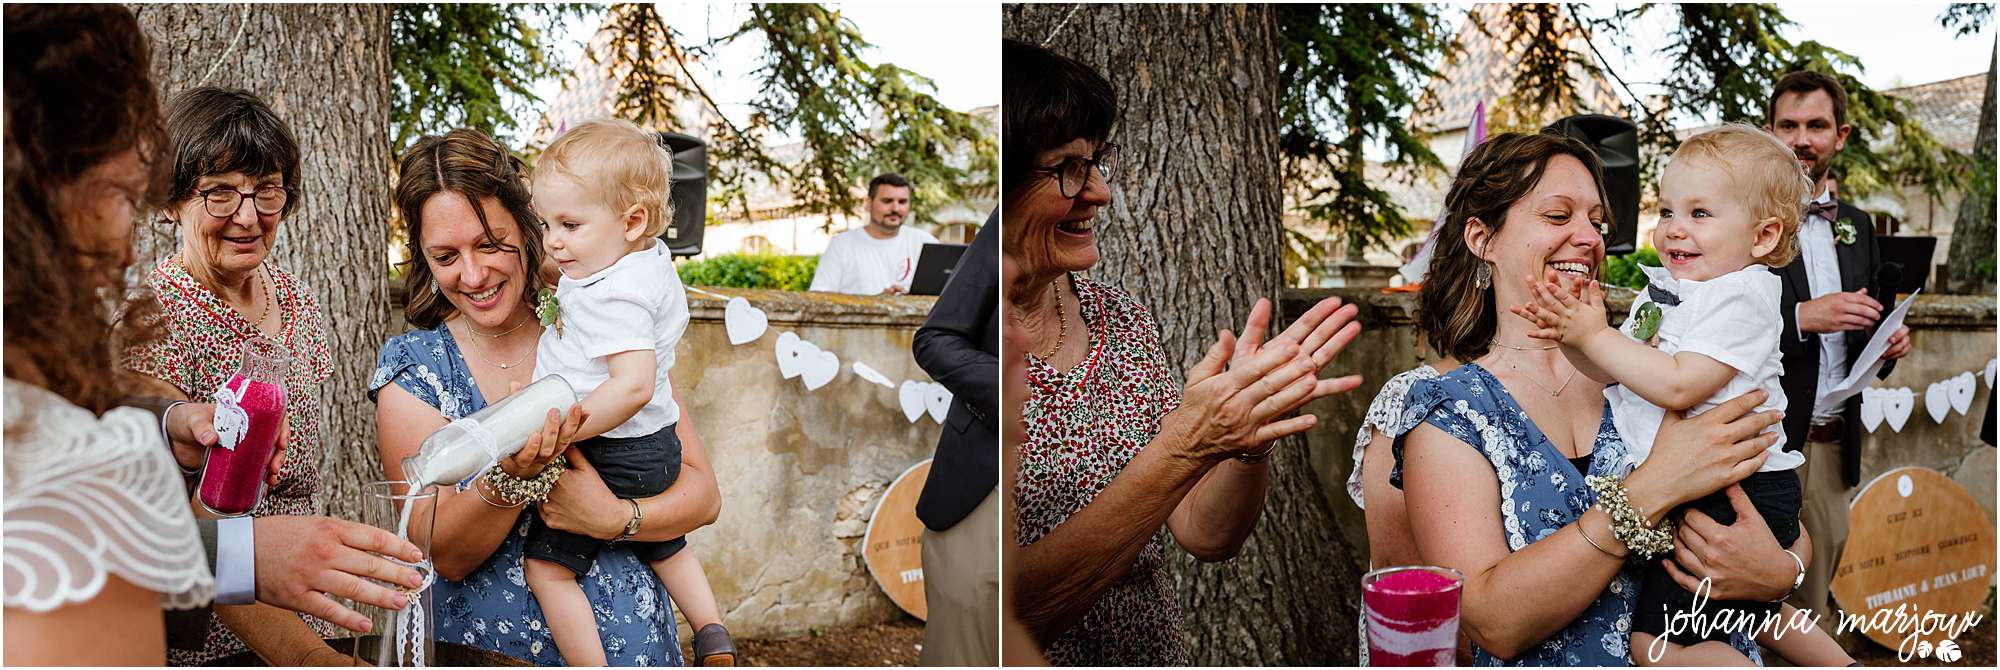 Cérémonie de mariage dans le Gard